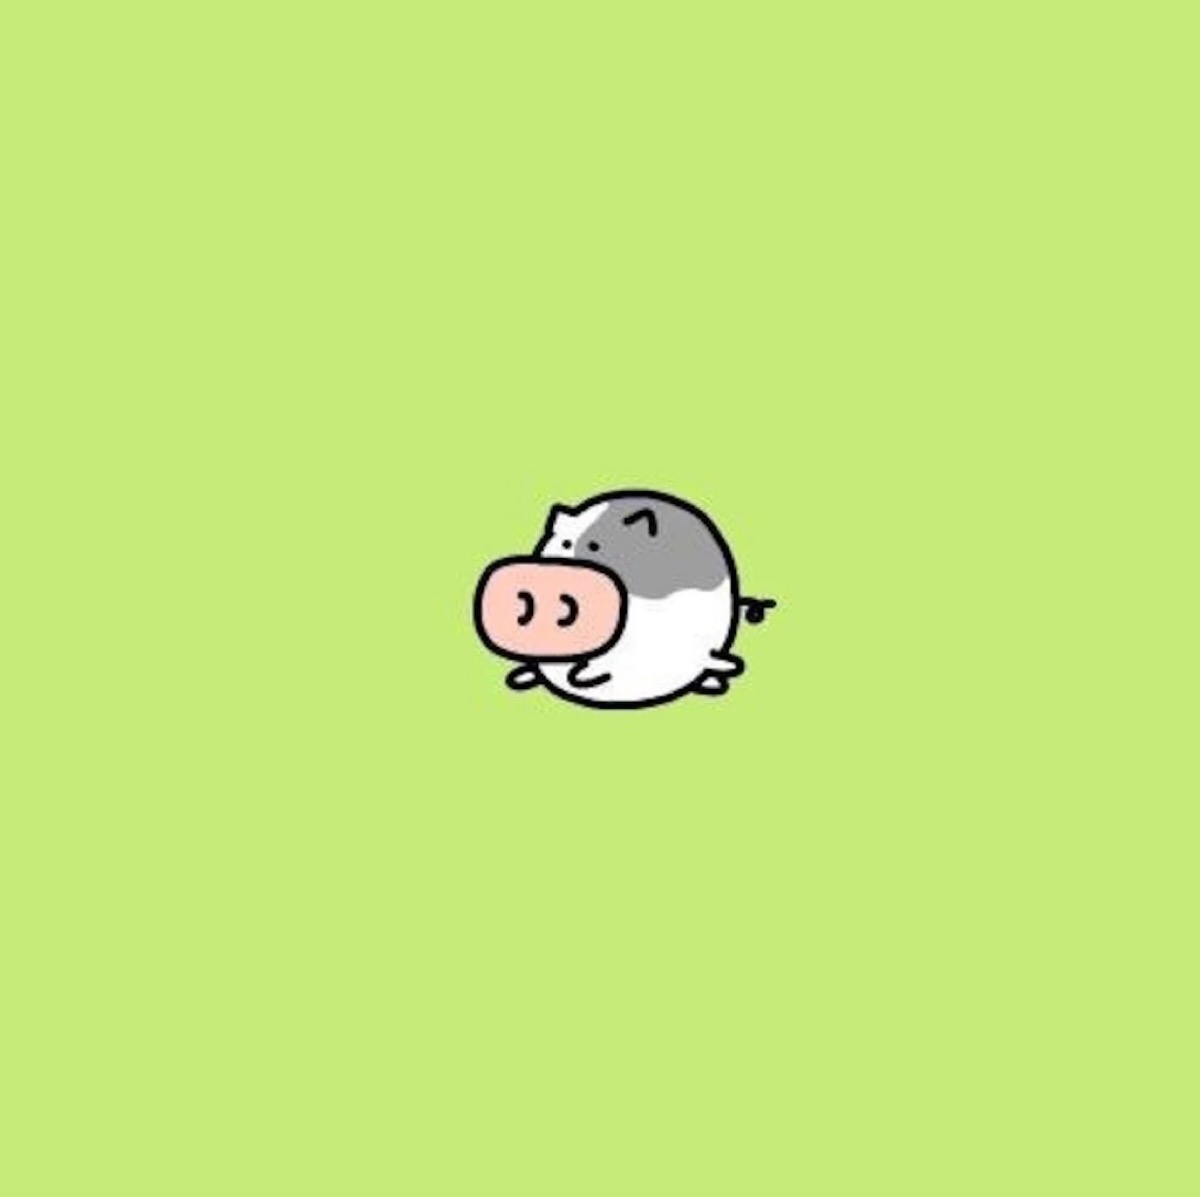 小花猪 小头像 小猪 可爱的卡通猪 手机 壁纸 卡通图片 二次元 平铺